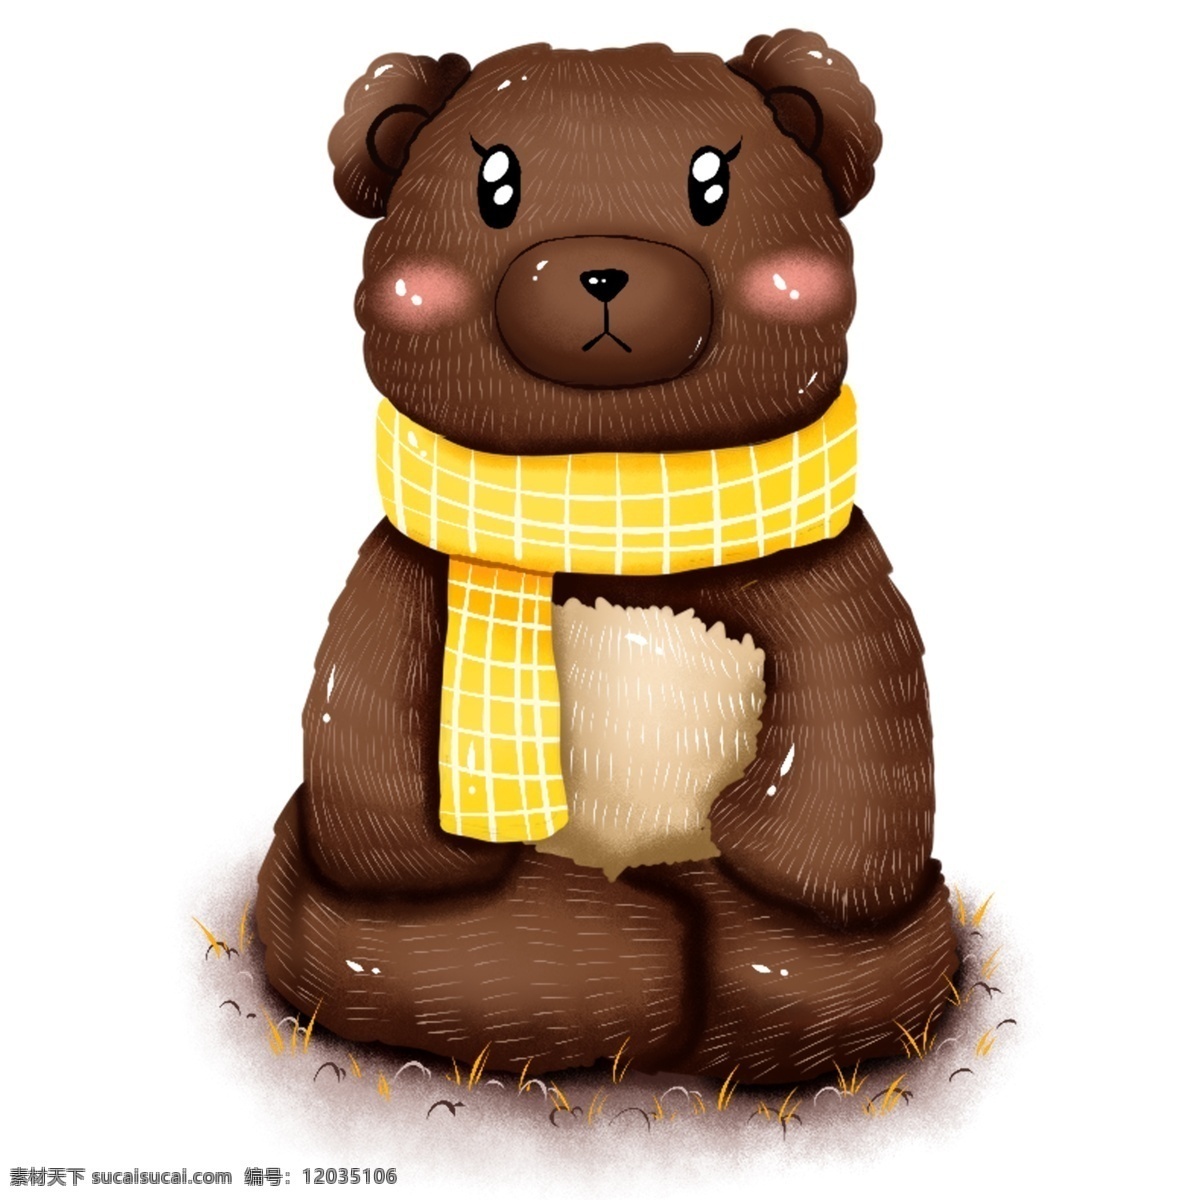 原创 手绘 动物 小 熊 冬季 冬日 围巾 元素 海报素材 商用 小熊